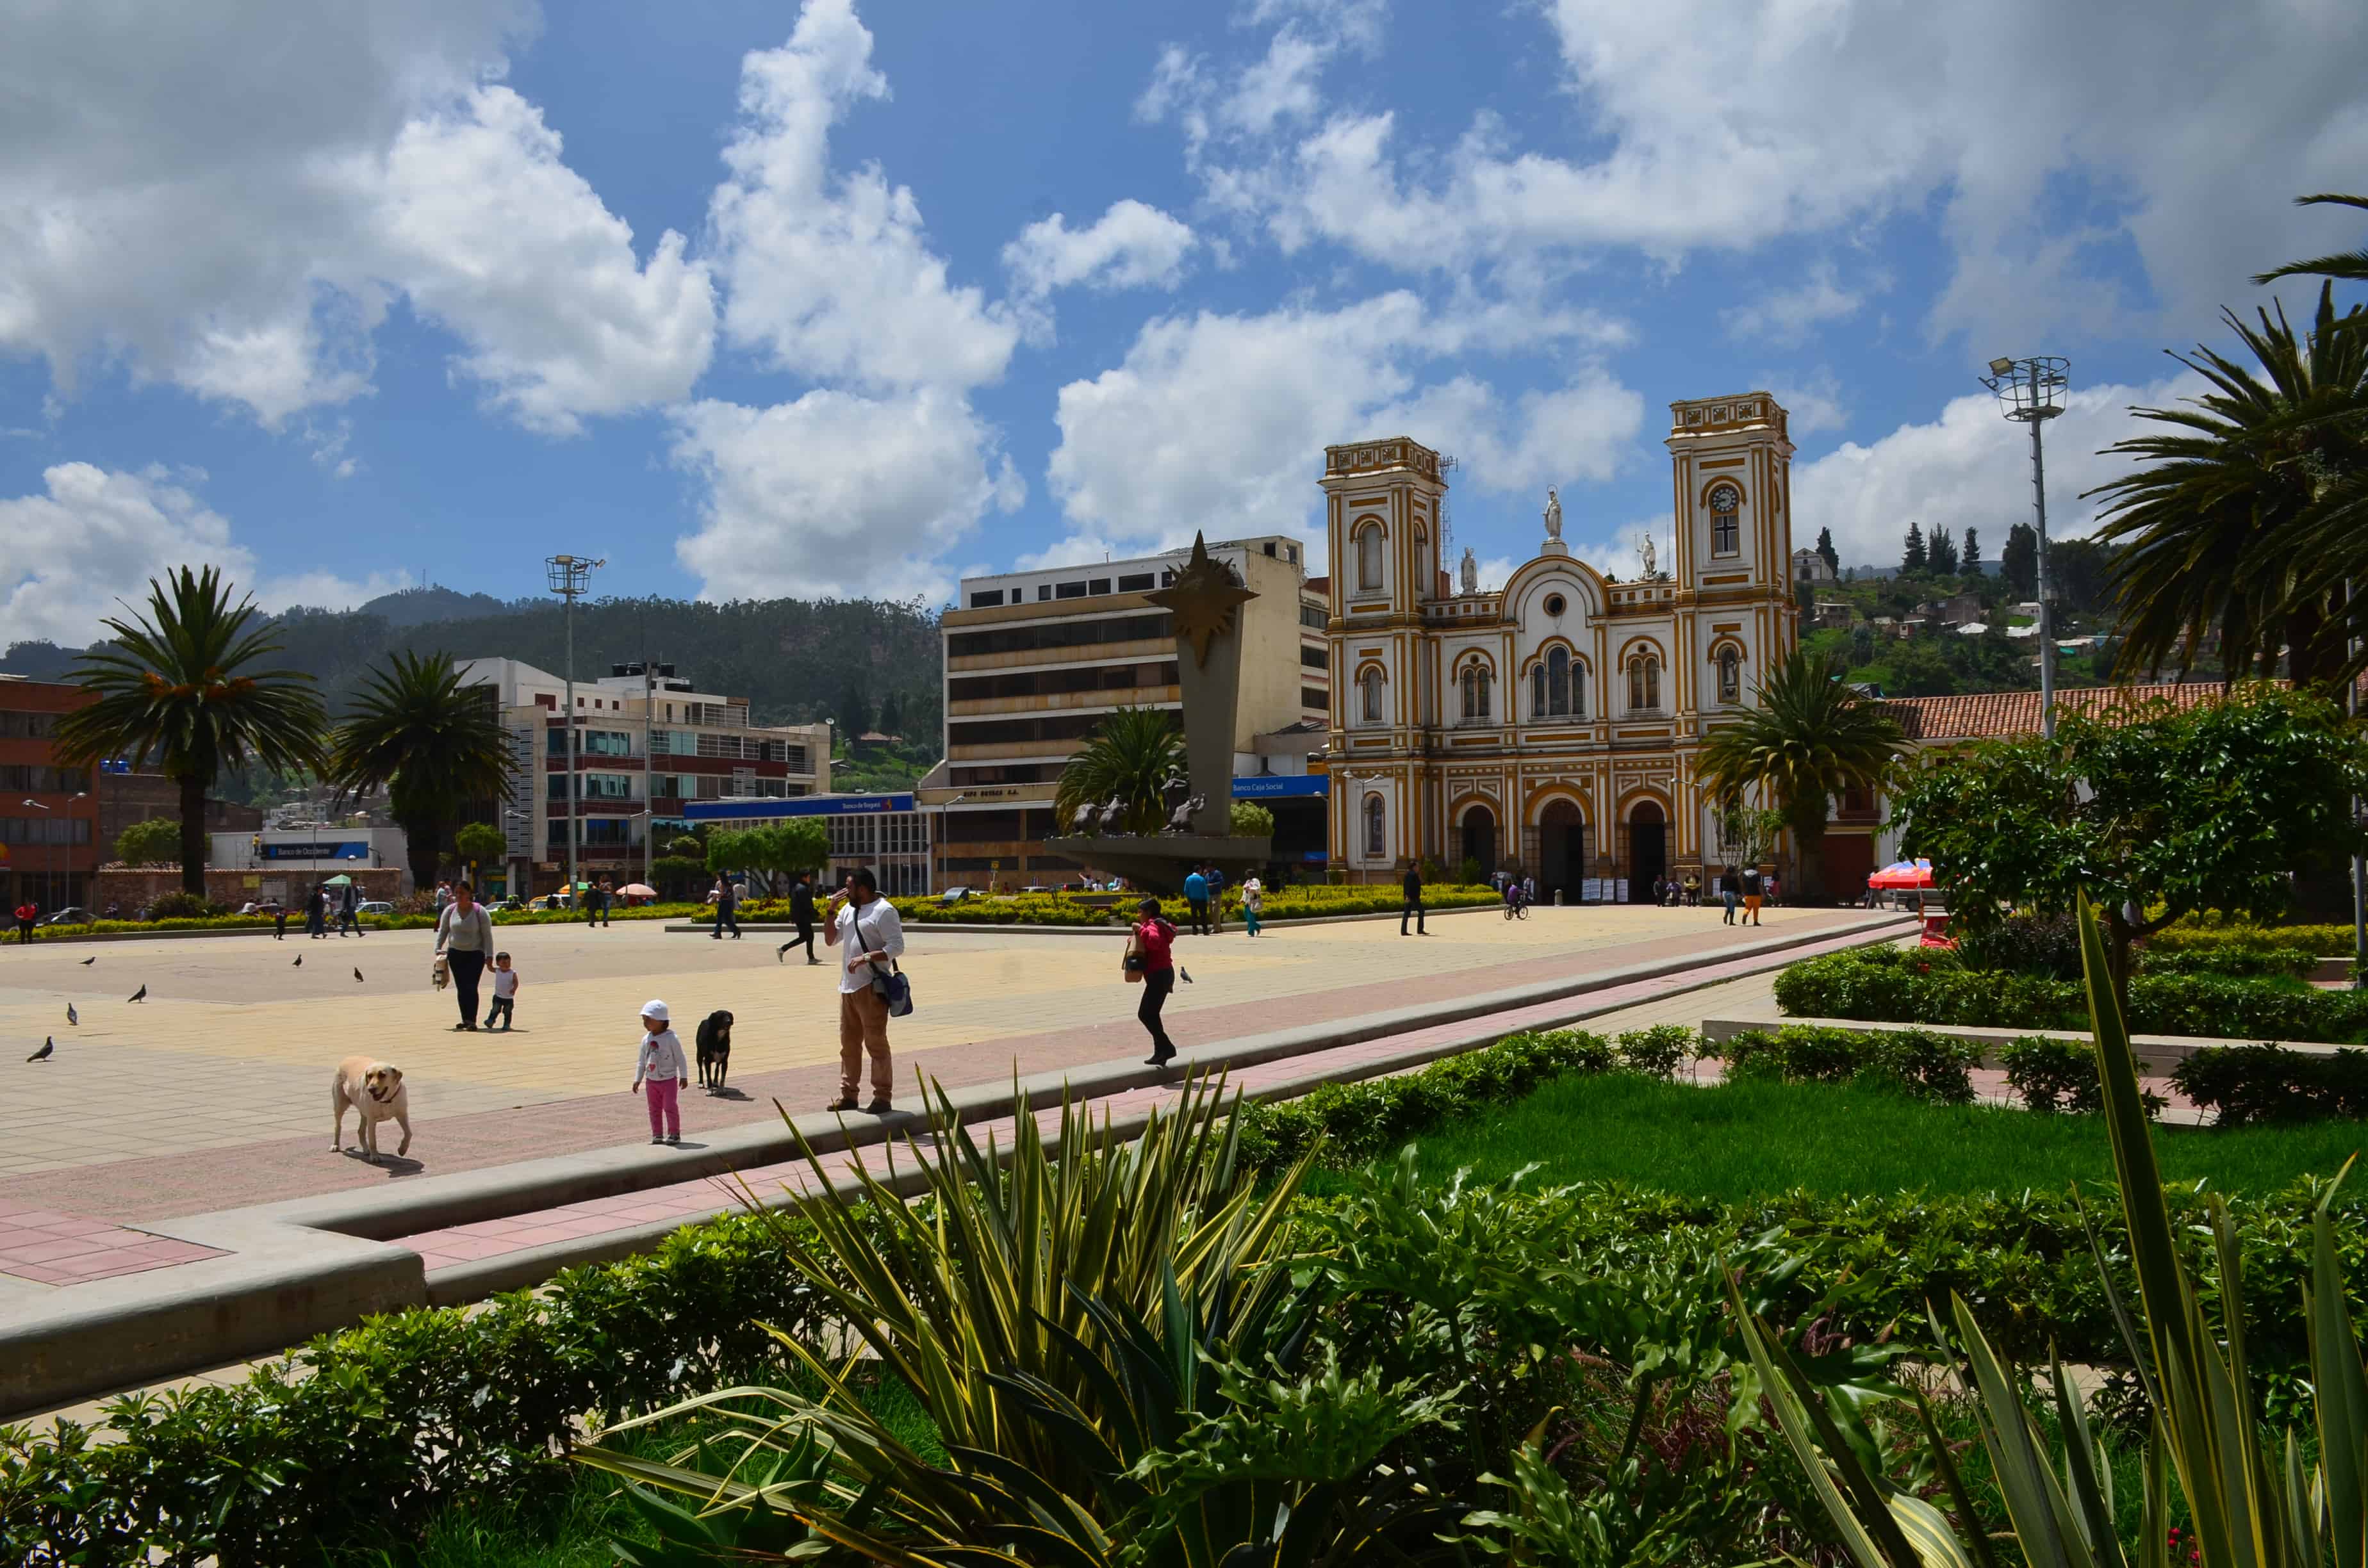 Plaza de la Villa in Sogamoso, Boyacá, Colombia